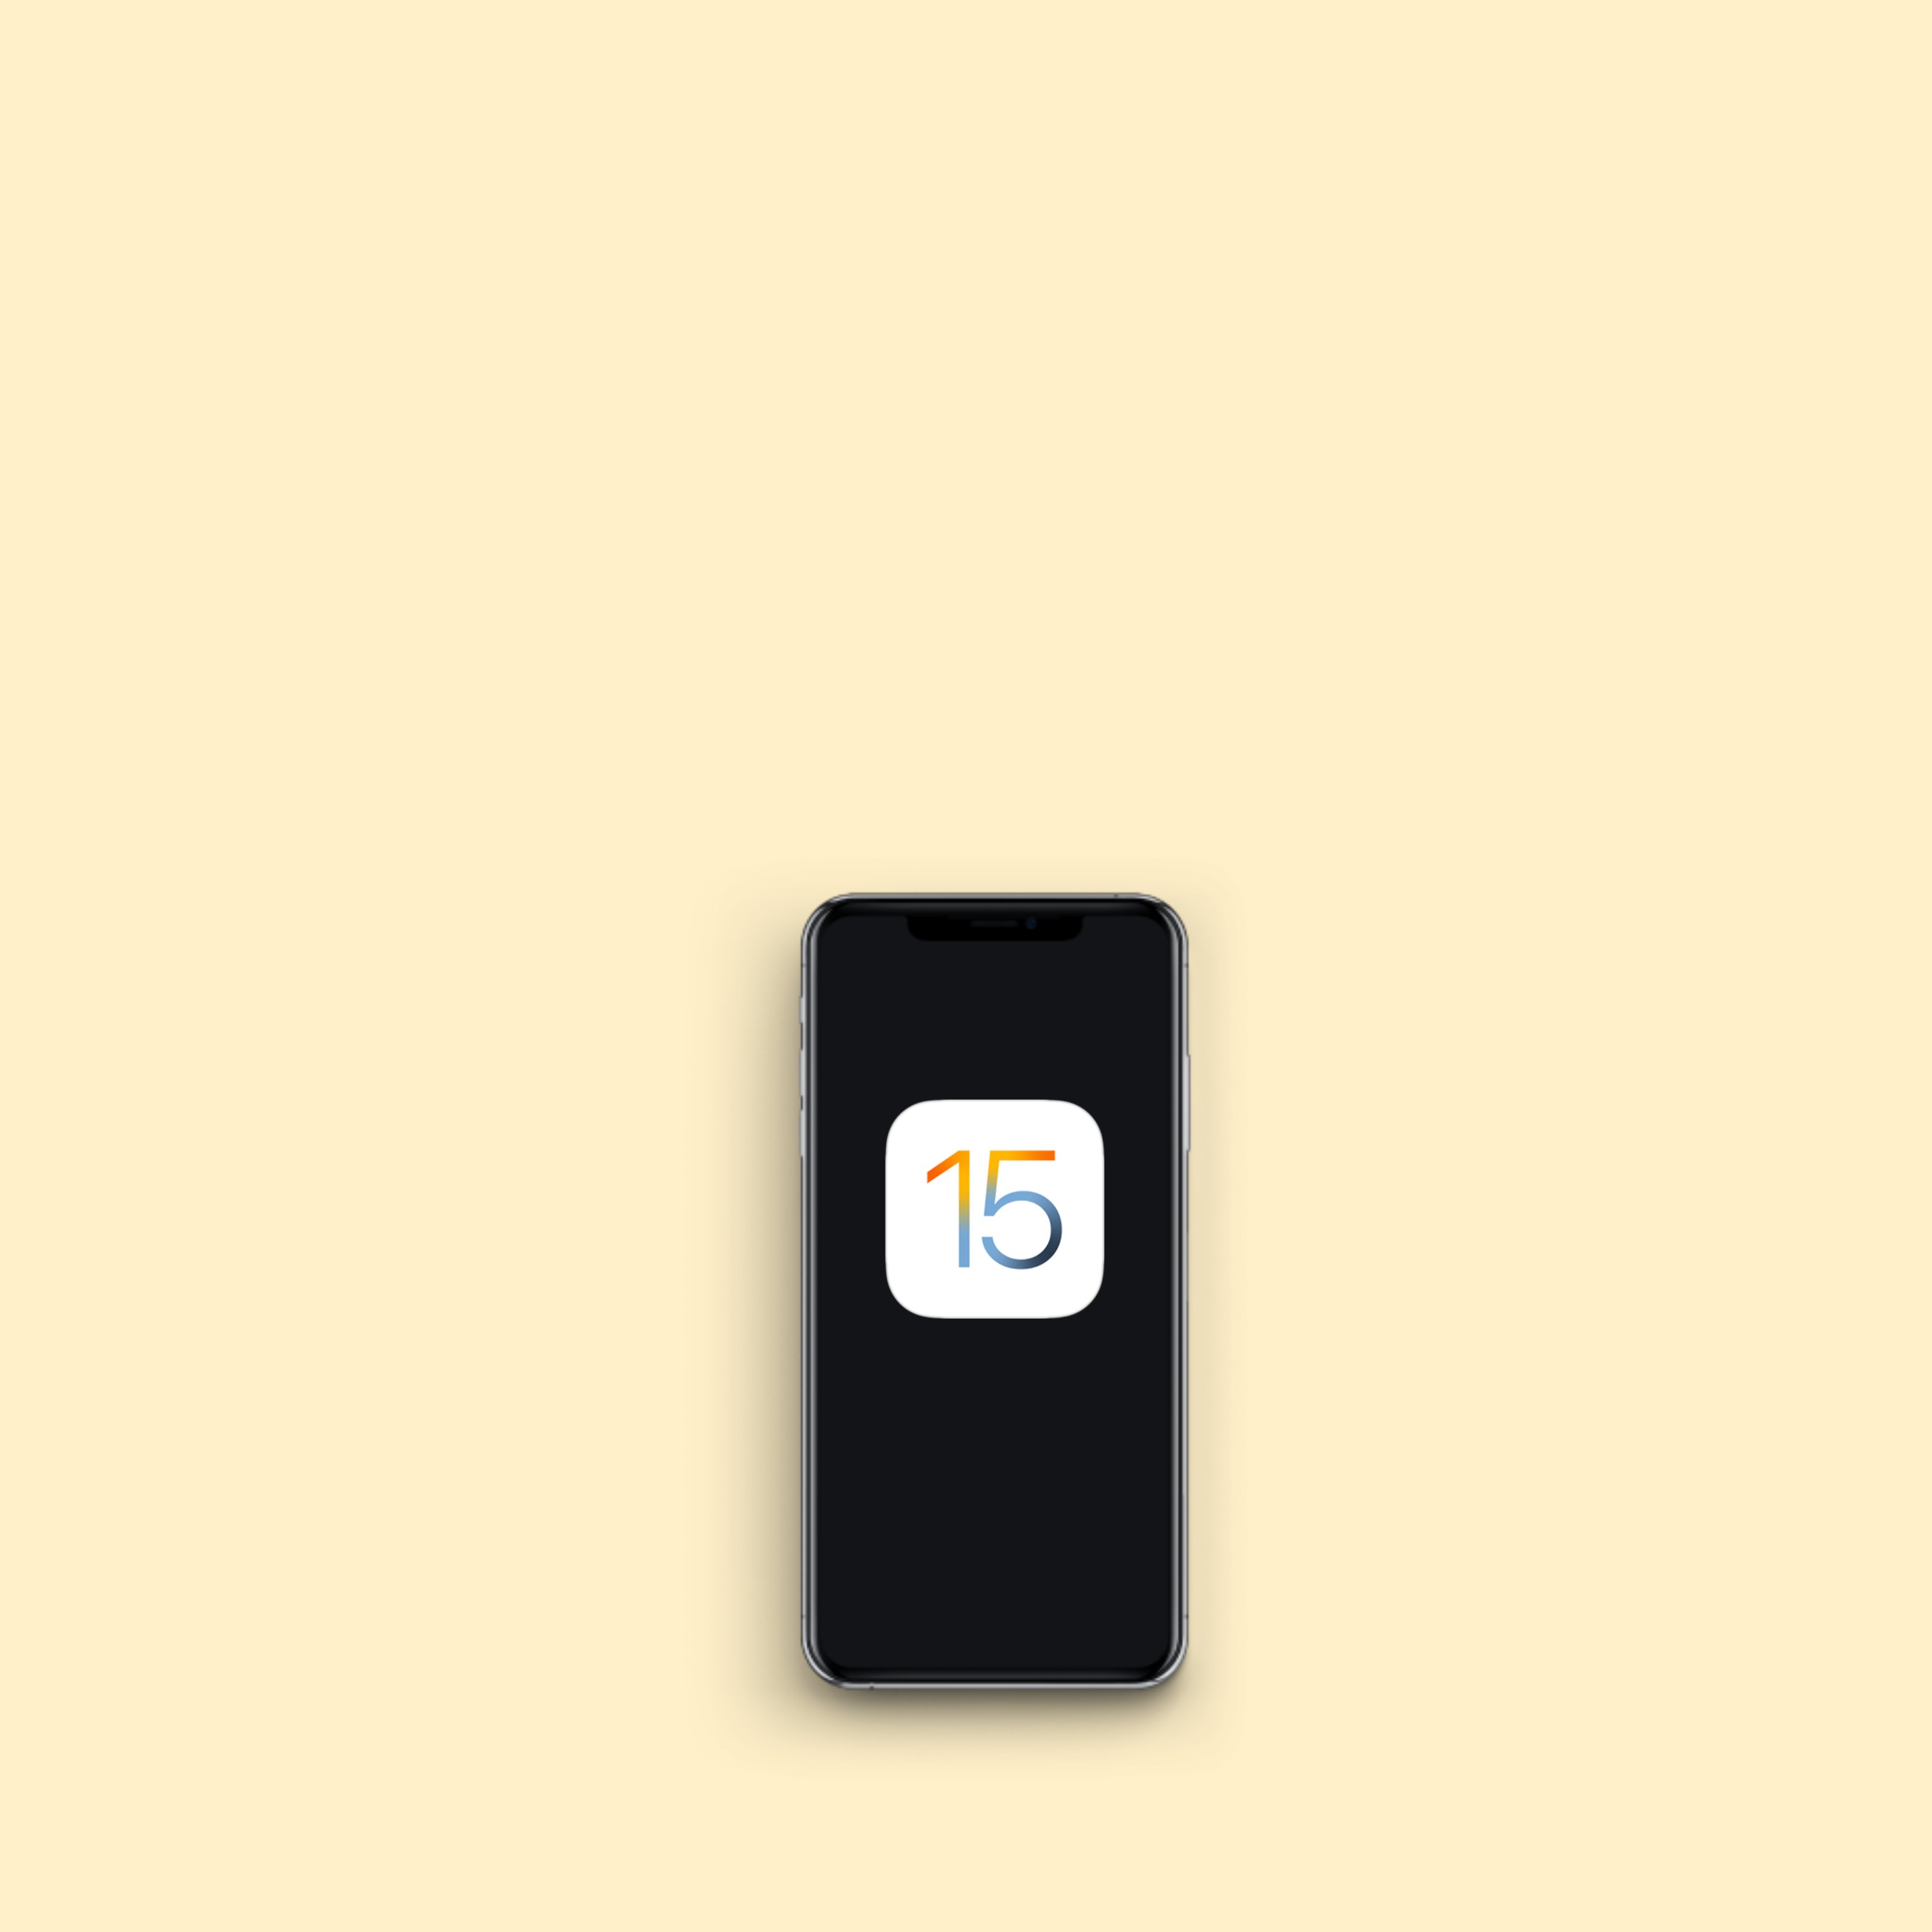 Ya está disponible iOS 15 para iPhone y estas son sus principales novedades